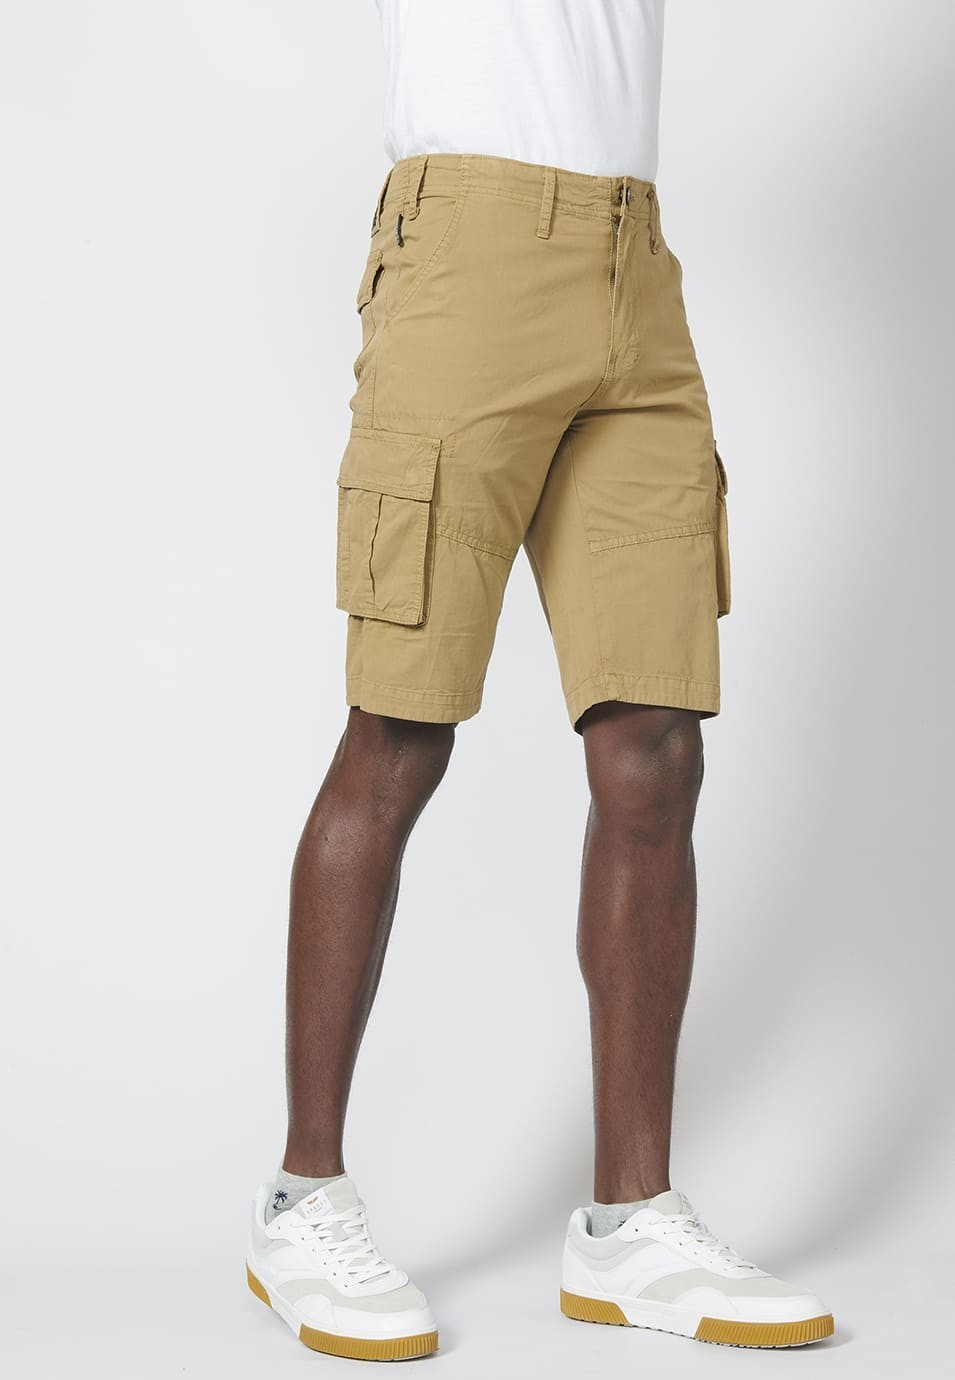 Bermuda pantalón corto estilo cargo para hombre con seis bolsillos 6